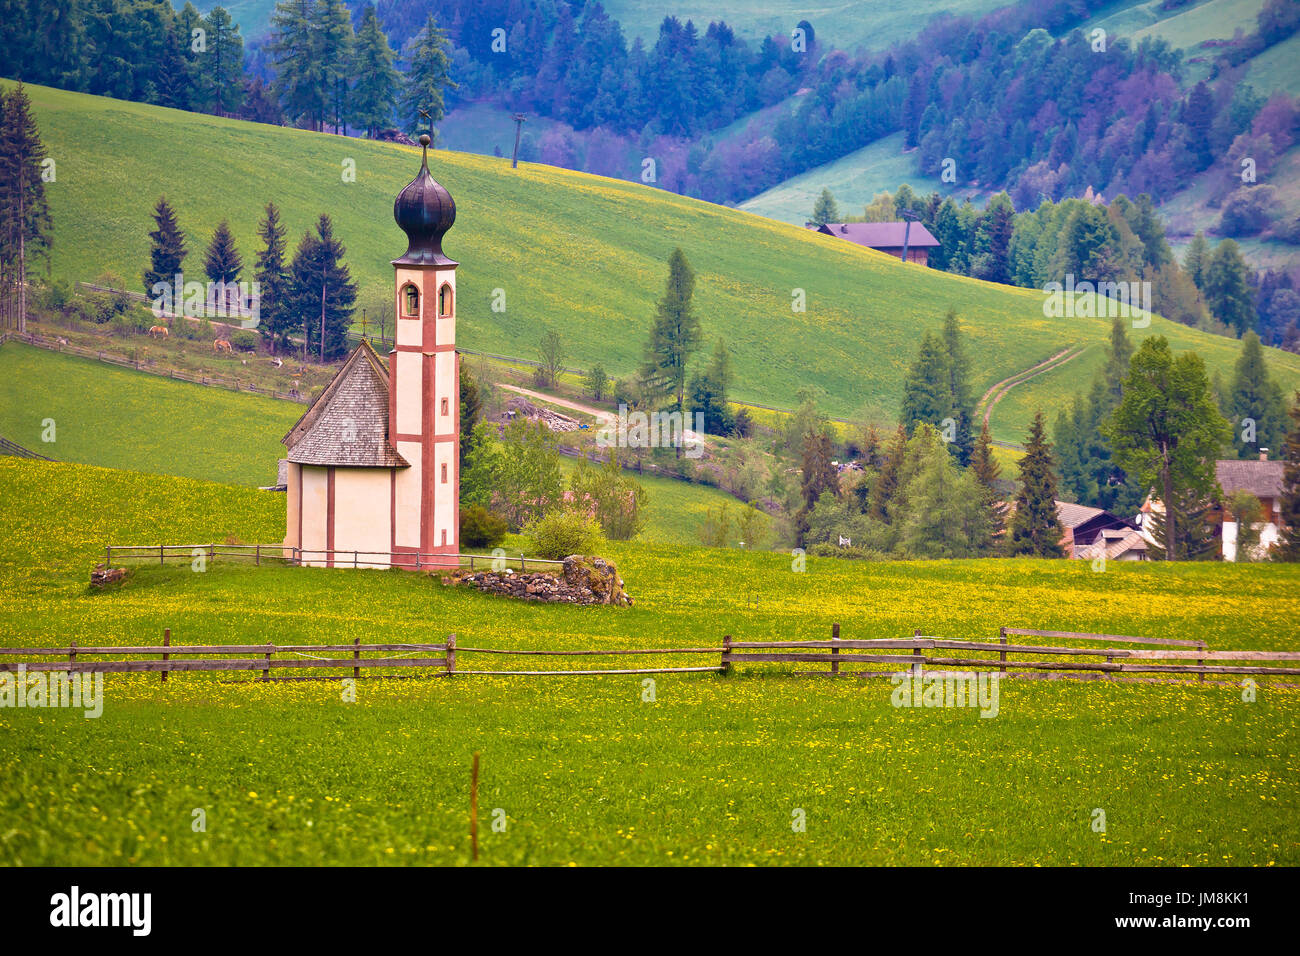 Idyllic alpine church in Santa Magdalena, Trentino Alto Adige region of Italy Stock Photo